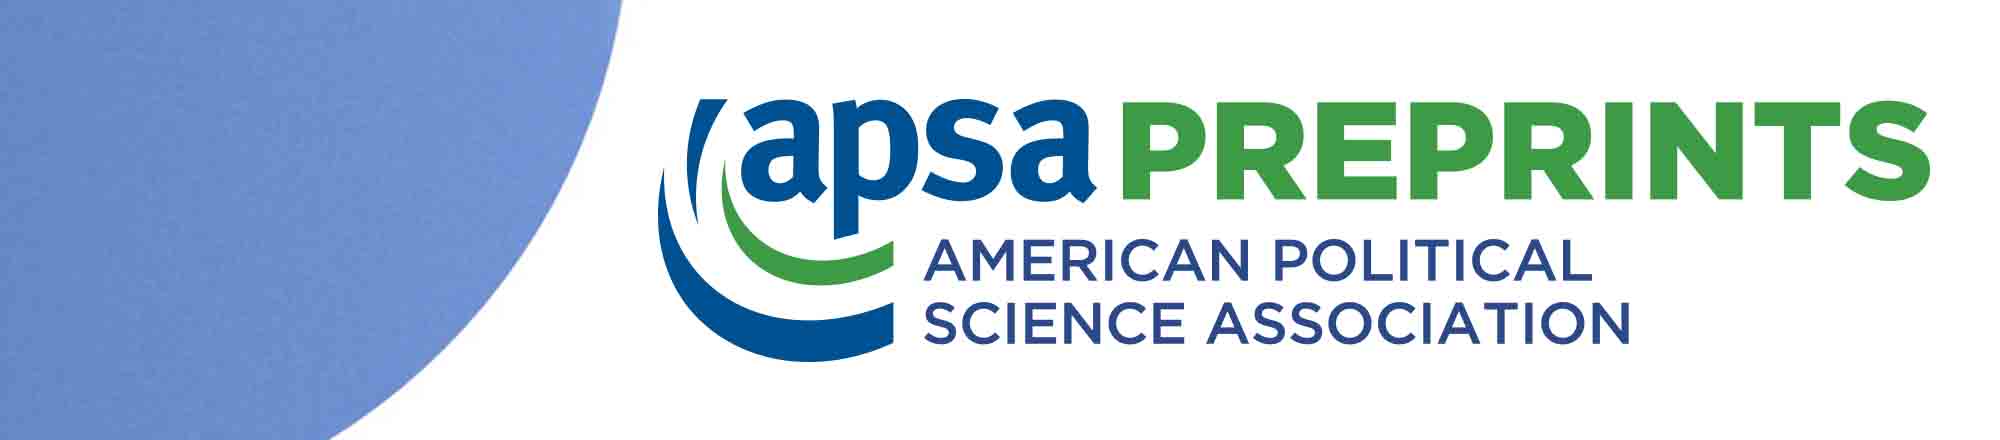 APSA Preprints